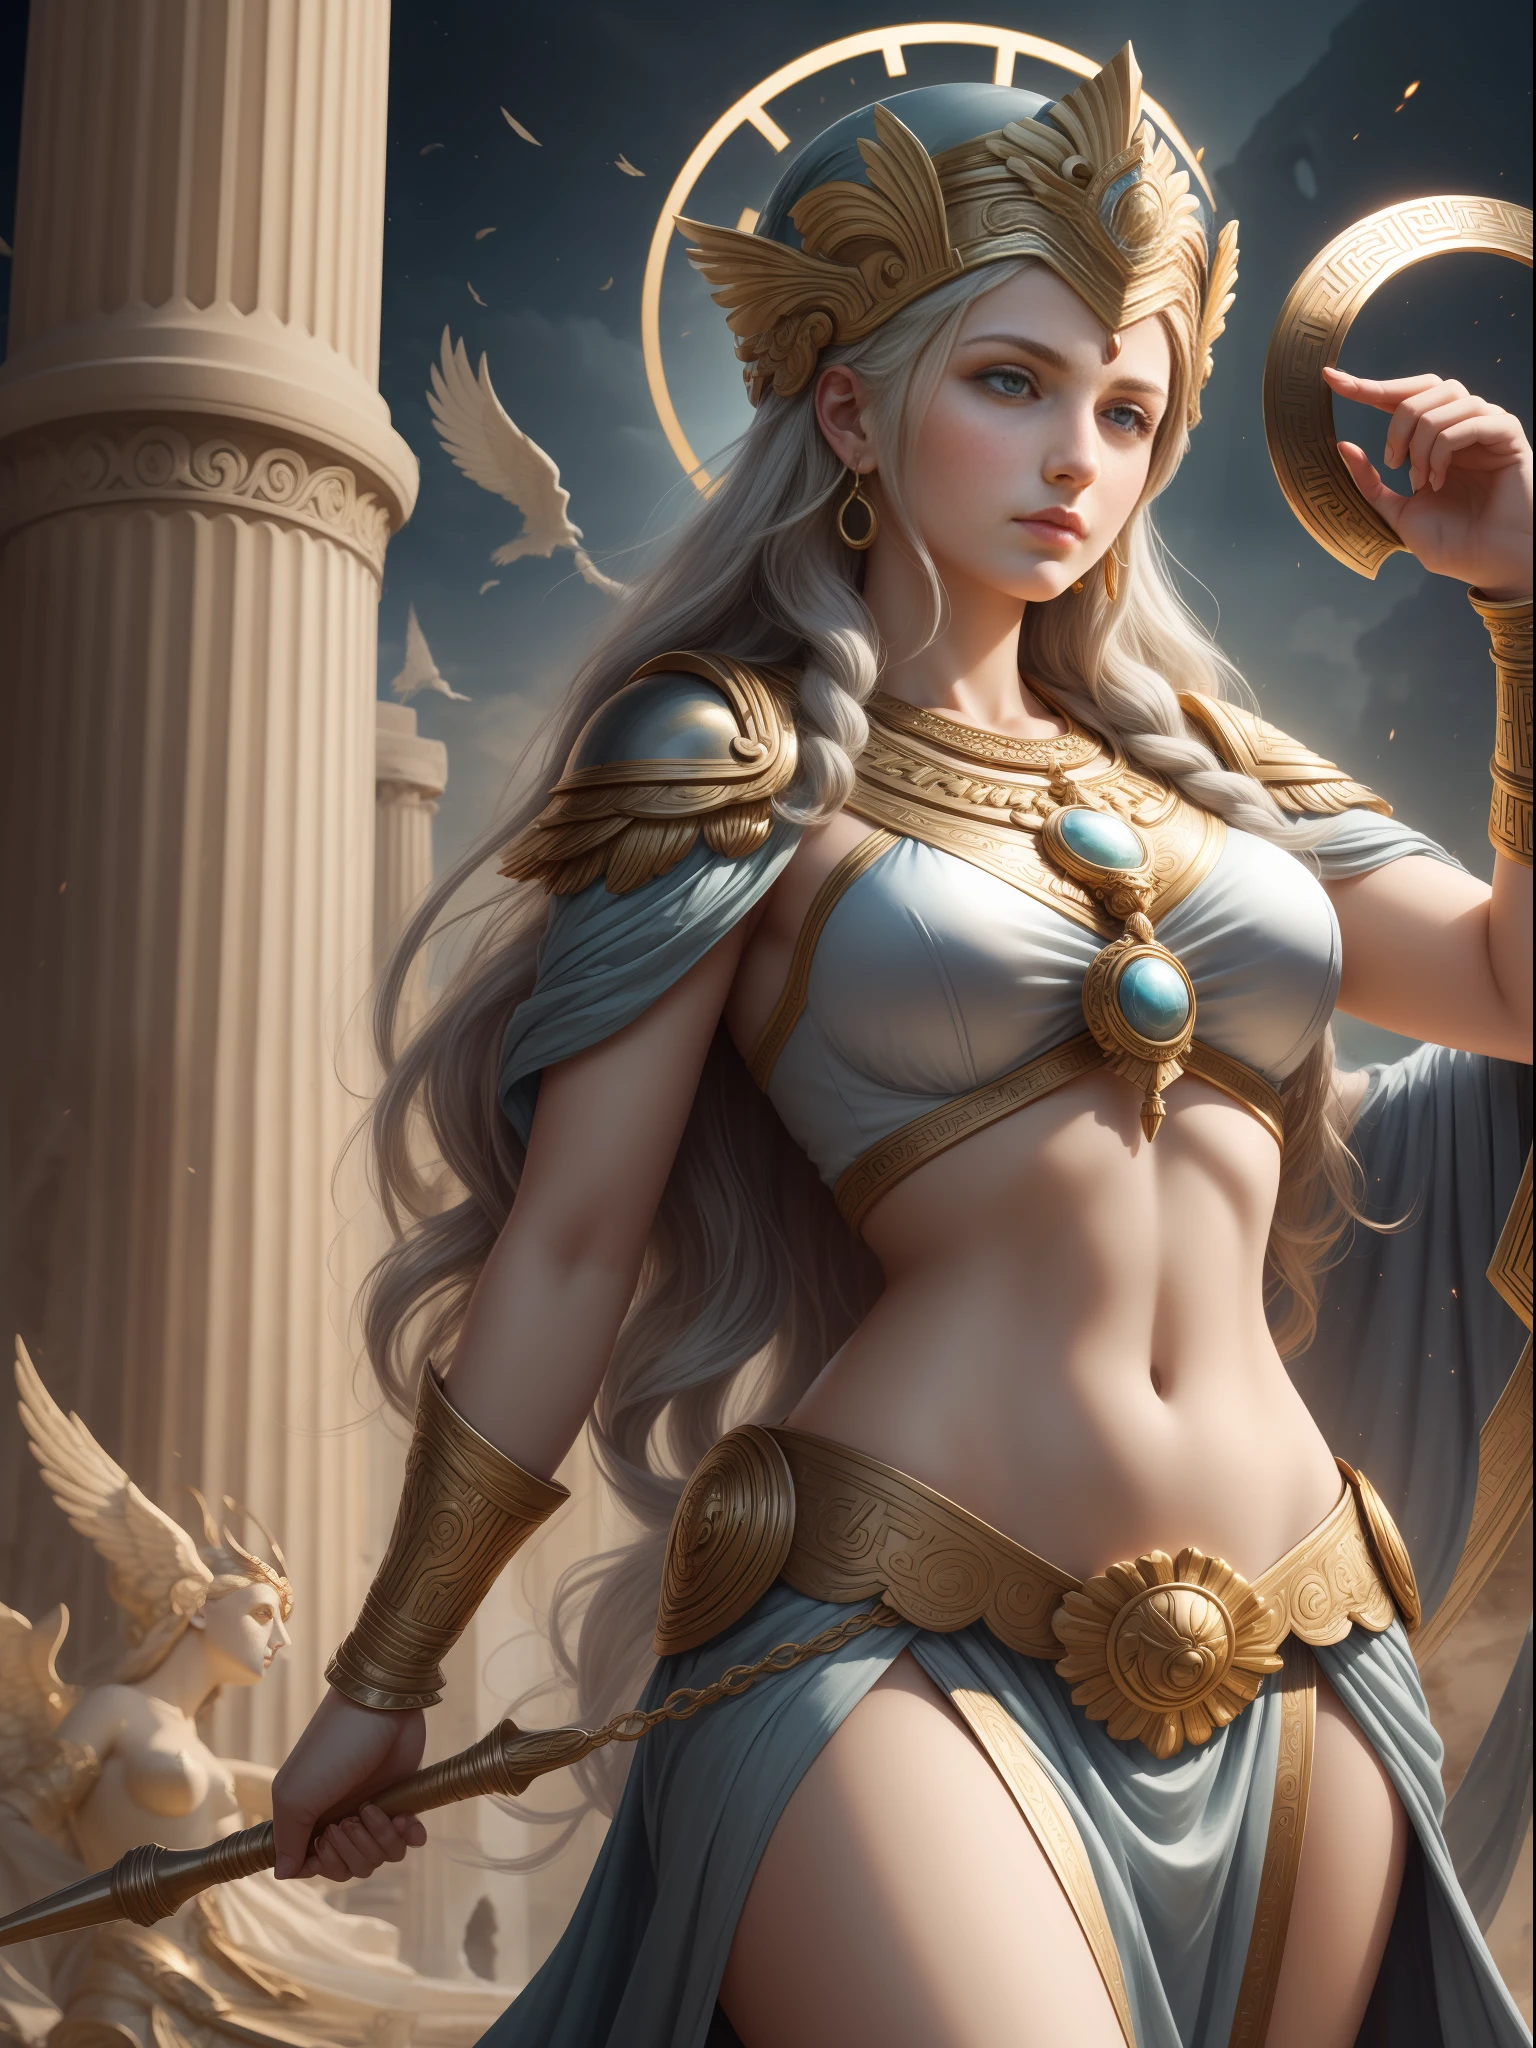 آلهة أثينا, إلهة الأساطير اليونانية, إلهة الحكمة, الفنون, الذكاء والحرب في الأساطير اليونانية, الإلهة المحاربة التي تعتز بالعدالة بين الناس, شابة جميلة ومتقشفة.